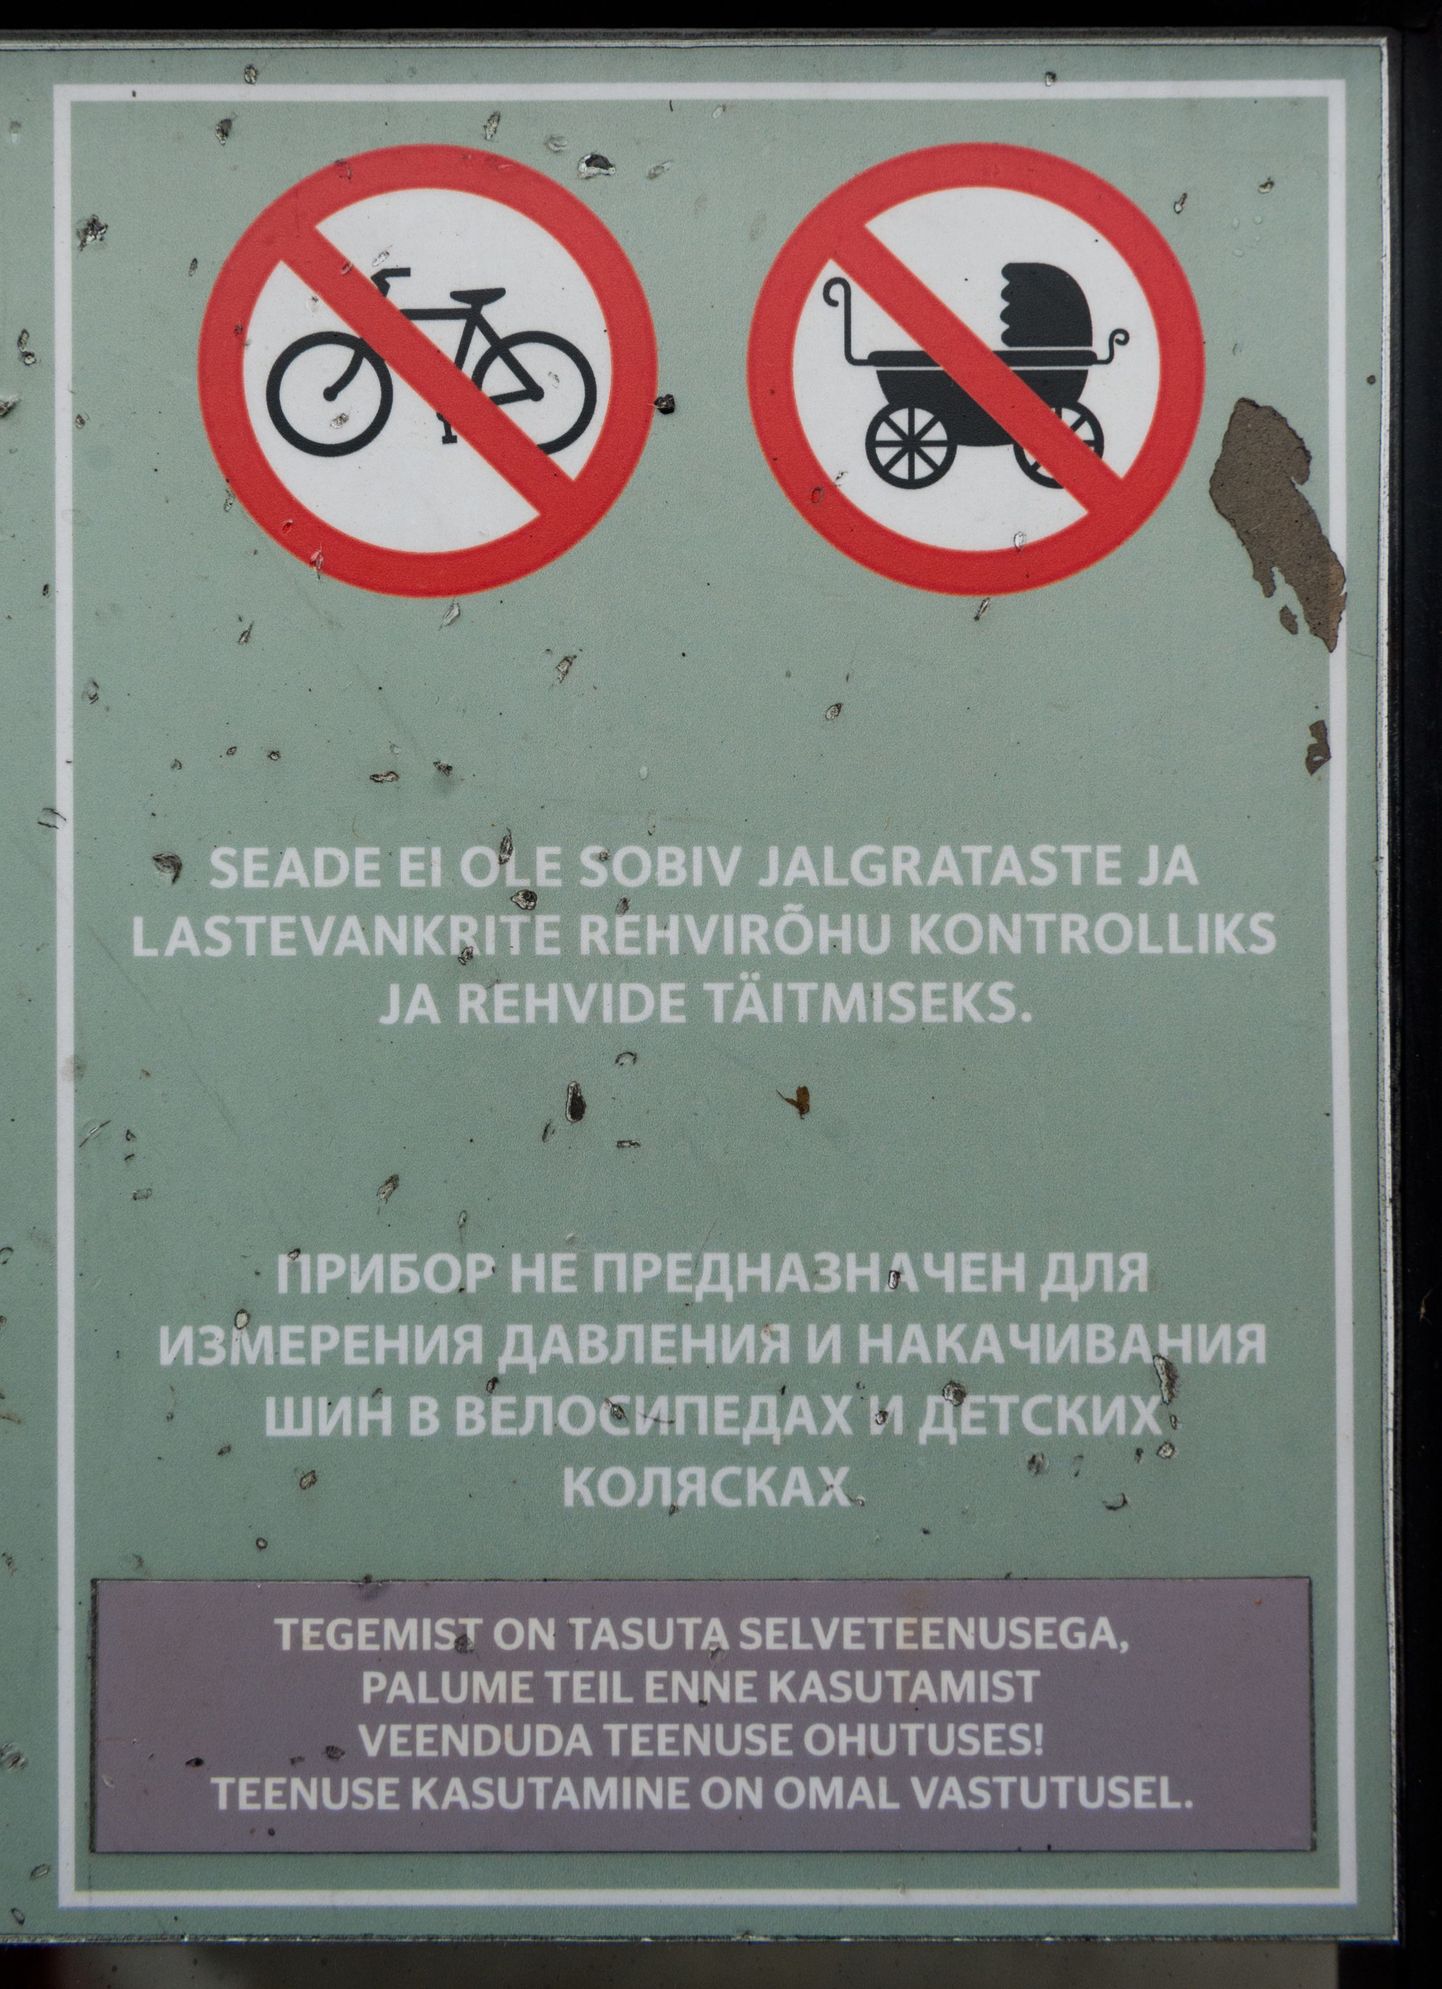 Предупреждение на заправке Statoil.